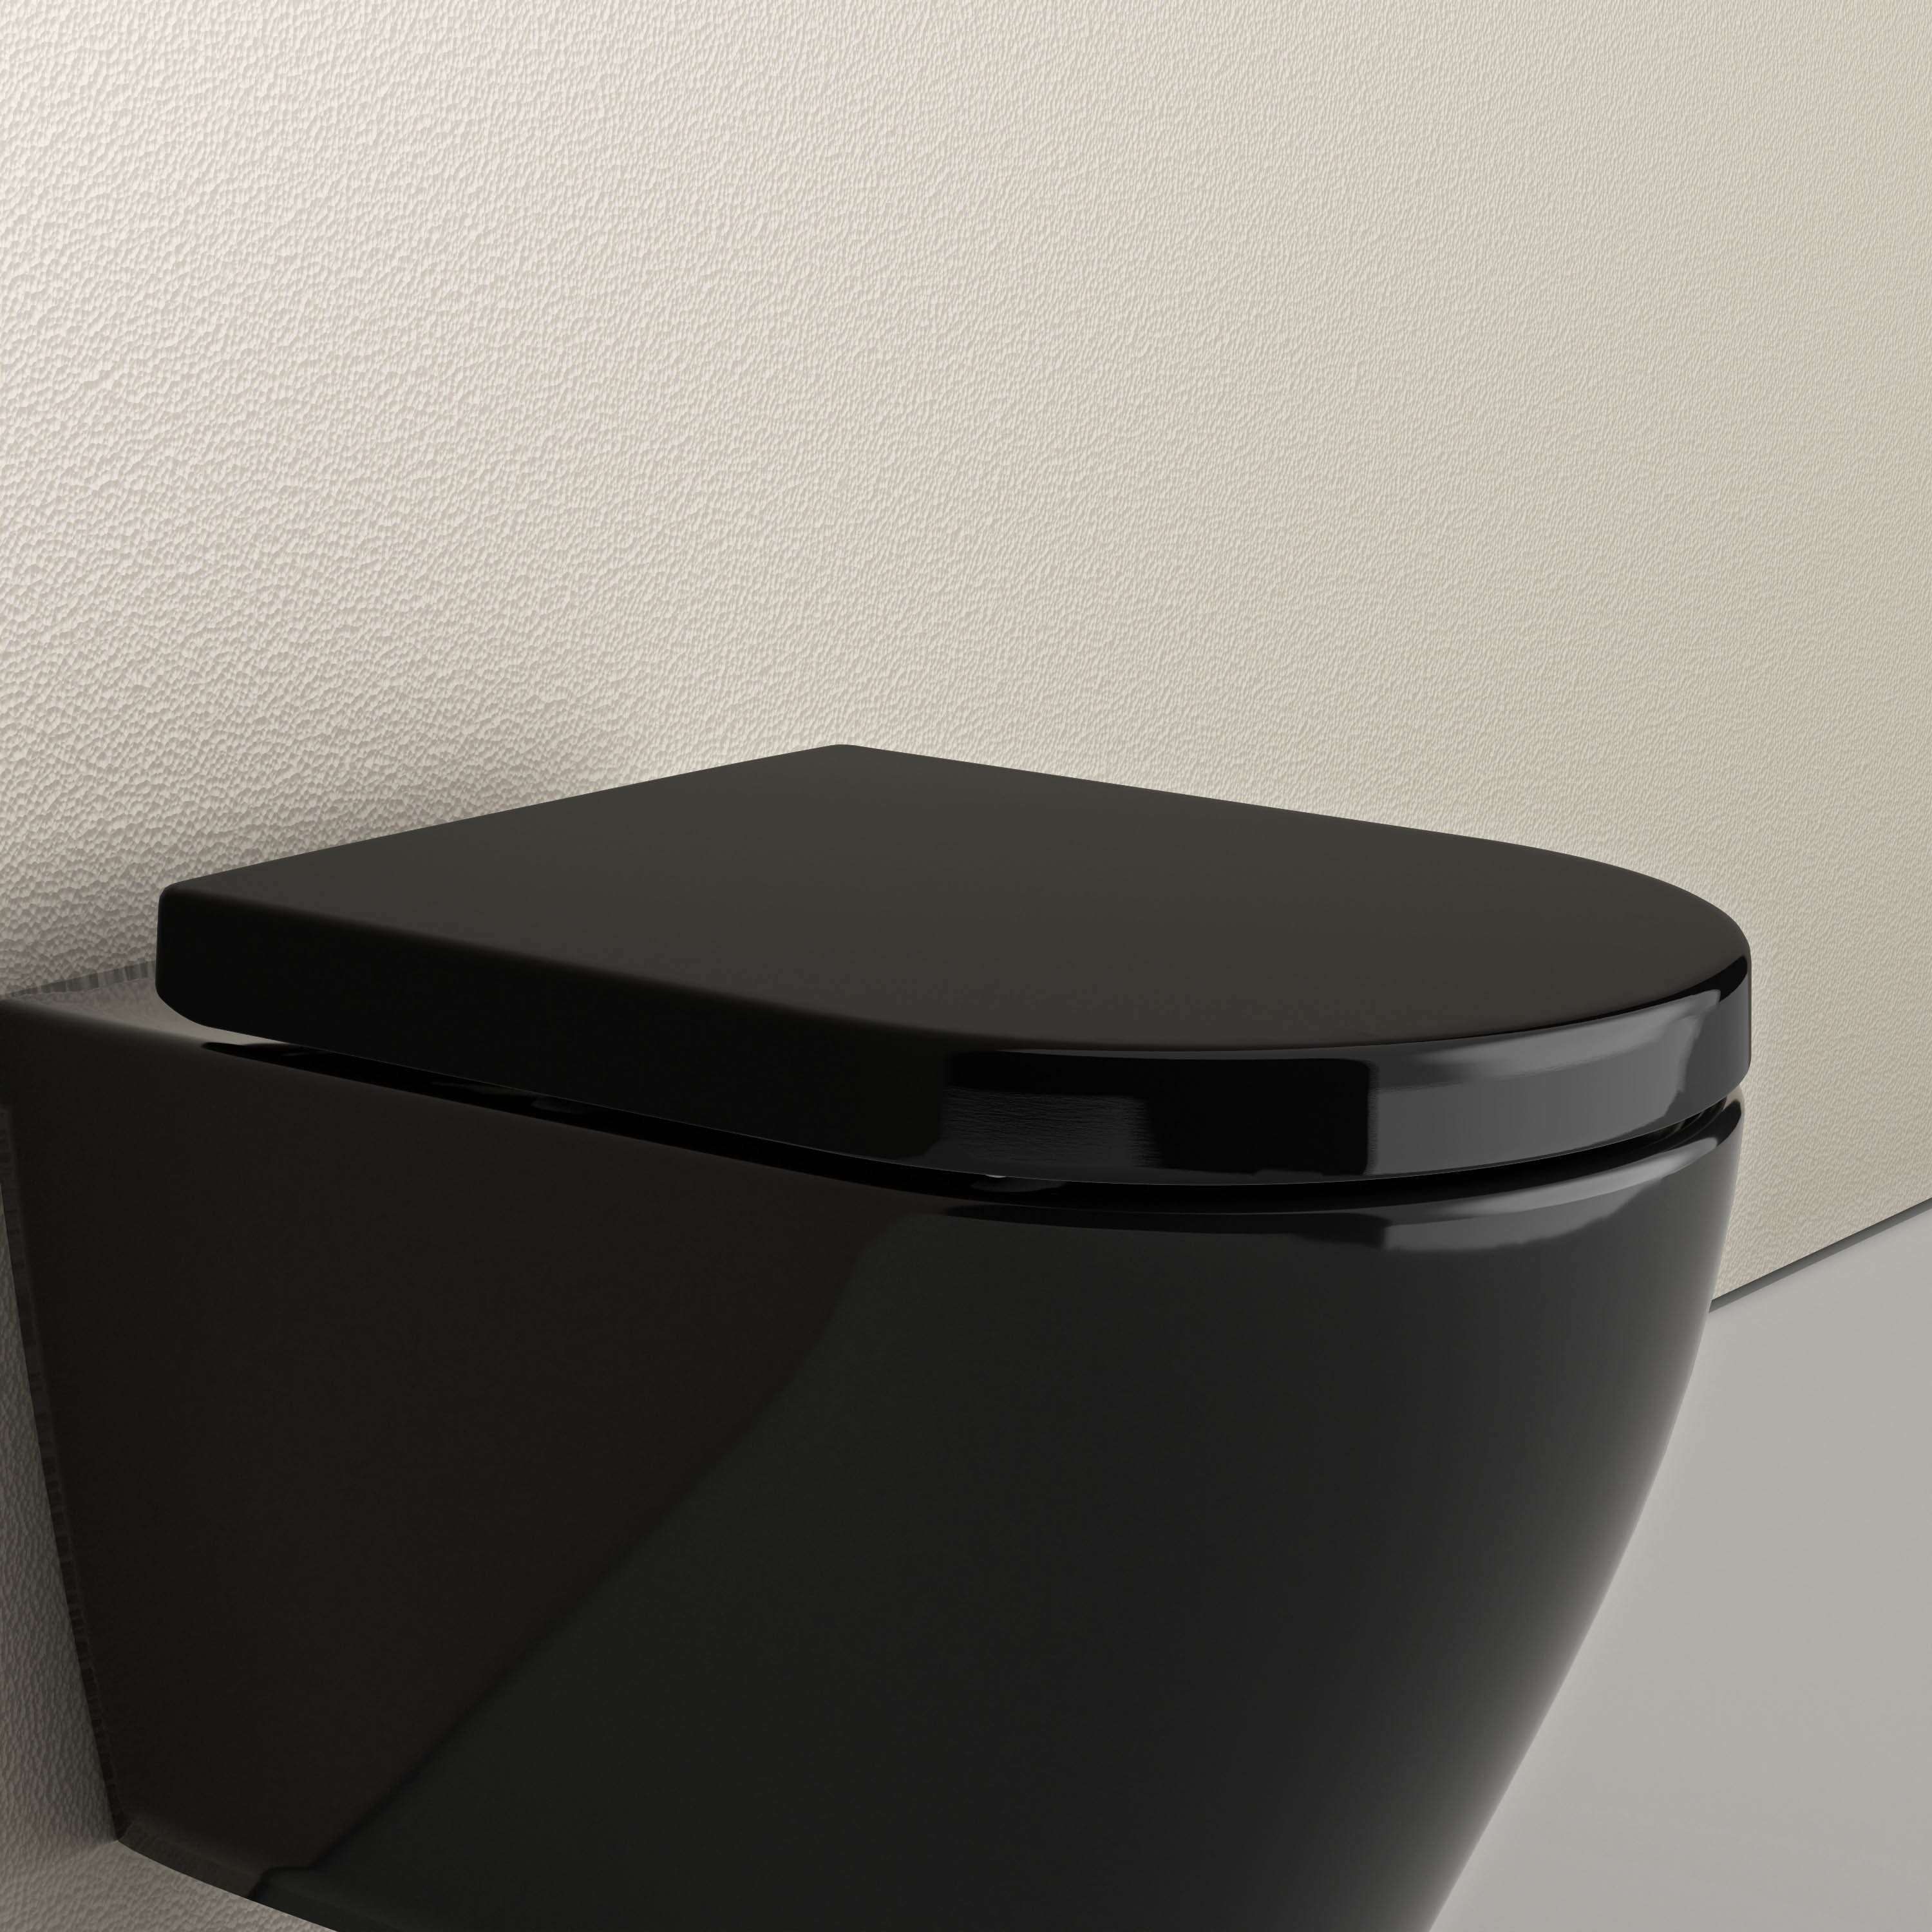 Bernstein WC-Sitz U1002, schwarz, mit Absenkautomatik, Take-Off-Funktion,  D-Form